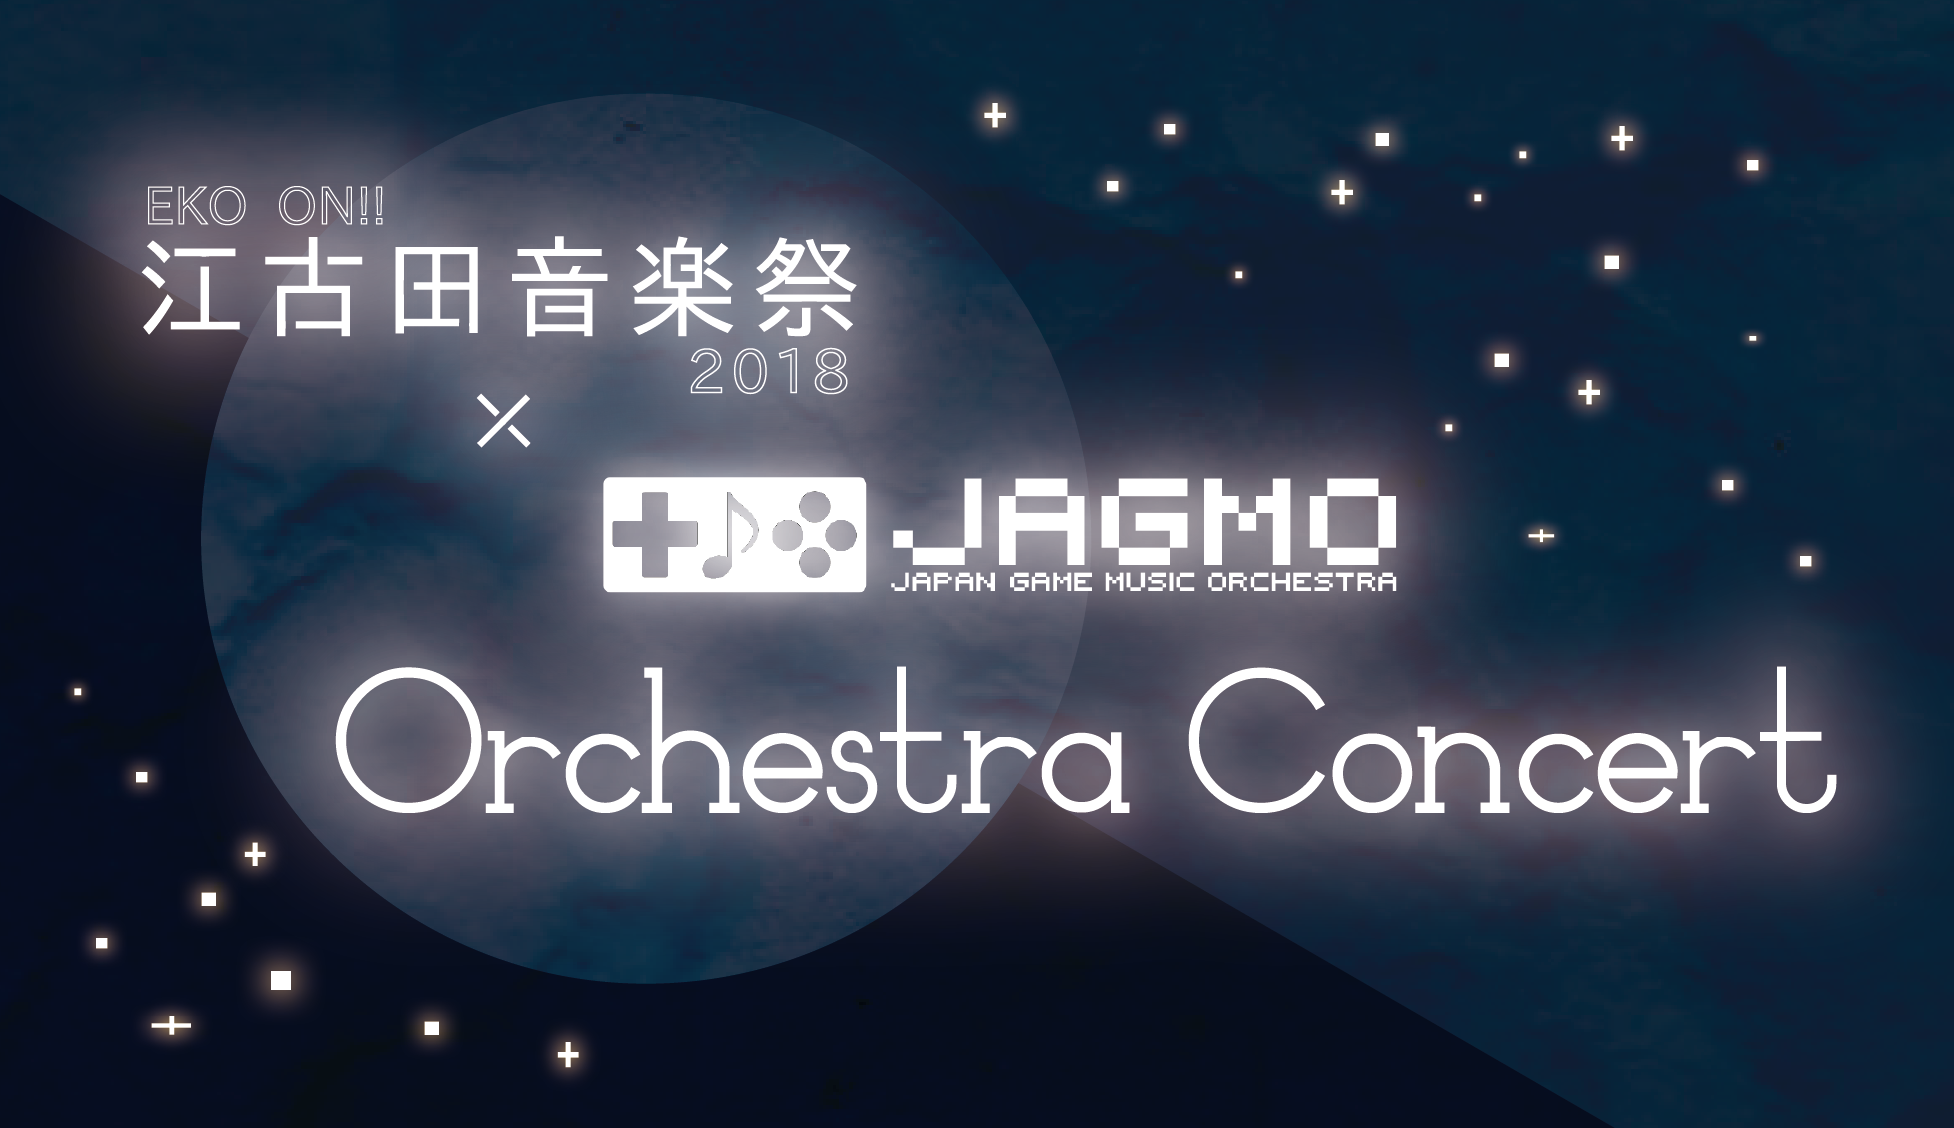 Eko On 江古田音楽祭18 にjagmoの出演が決定 Eko On 江古田音楽祭18 Jagmo Orchestra Concert を18年10月日 土 に開催 株式会社レゾナージュのプレスリリース